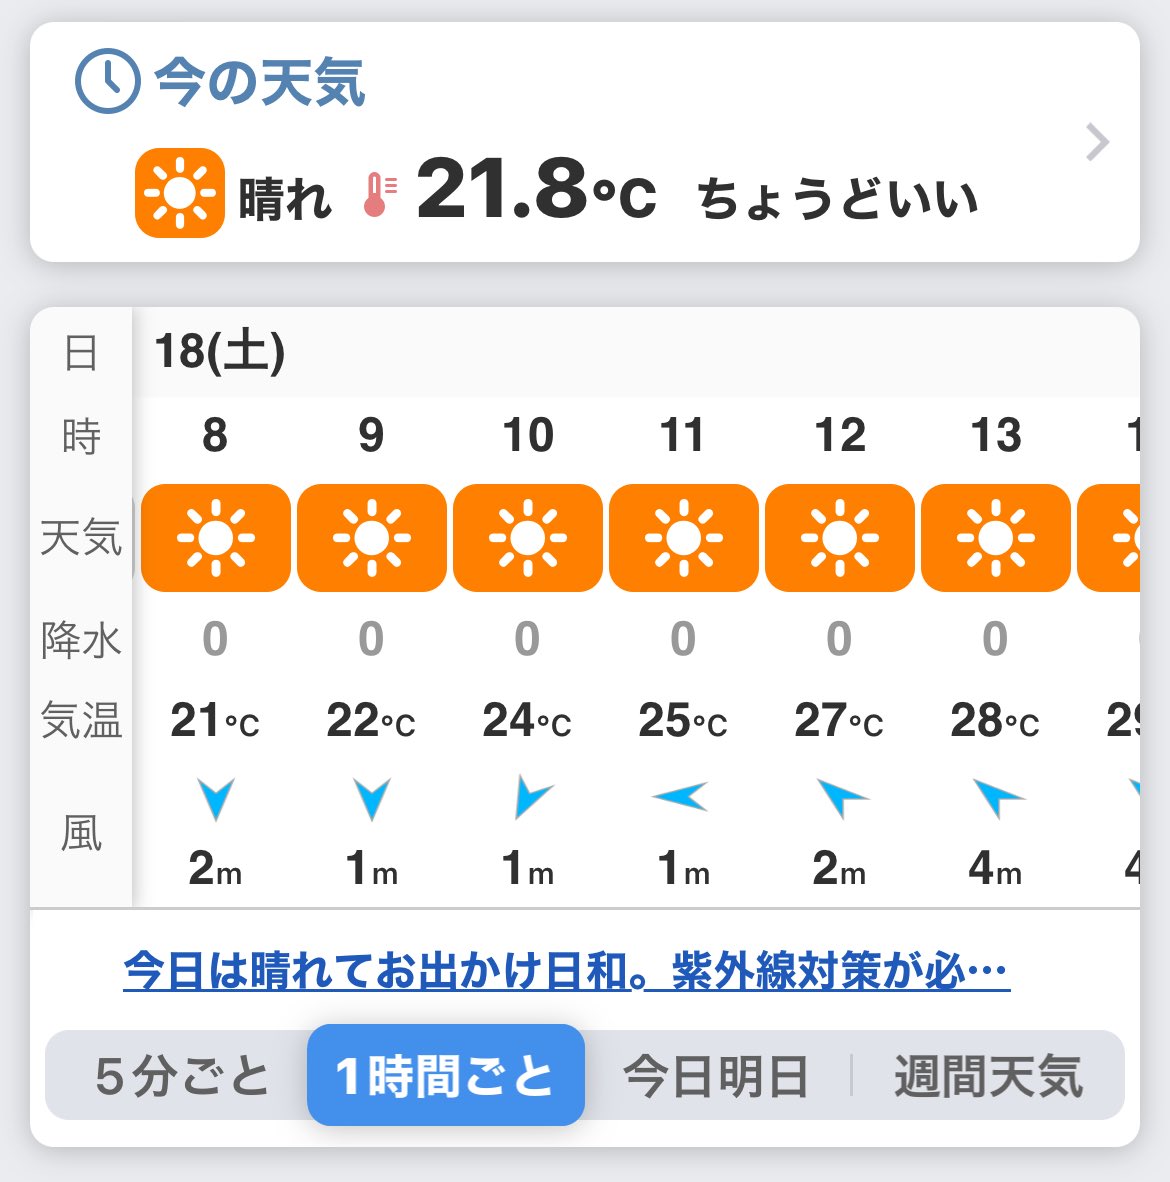 おはようございます☀️
朝からいい天気で温かいです。
今日はとうとう30℃いきますね。